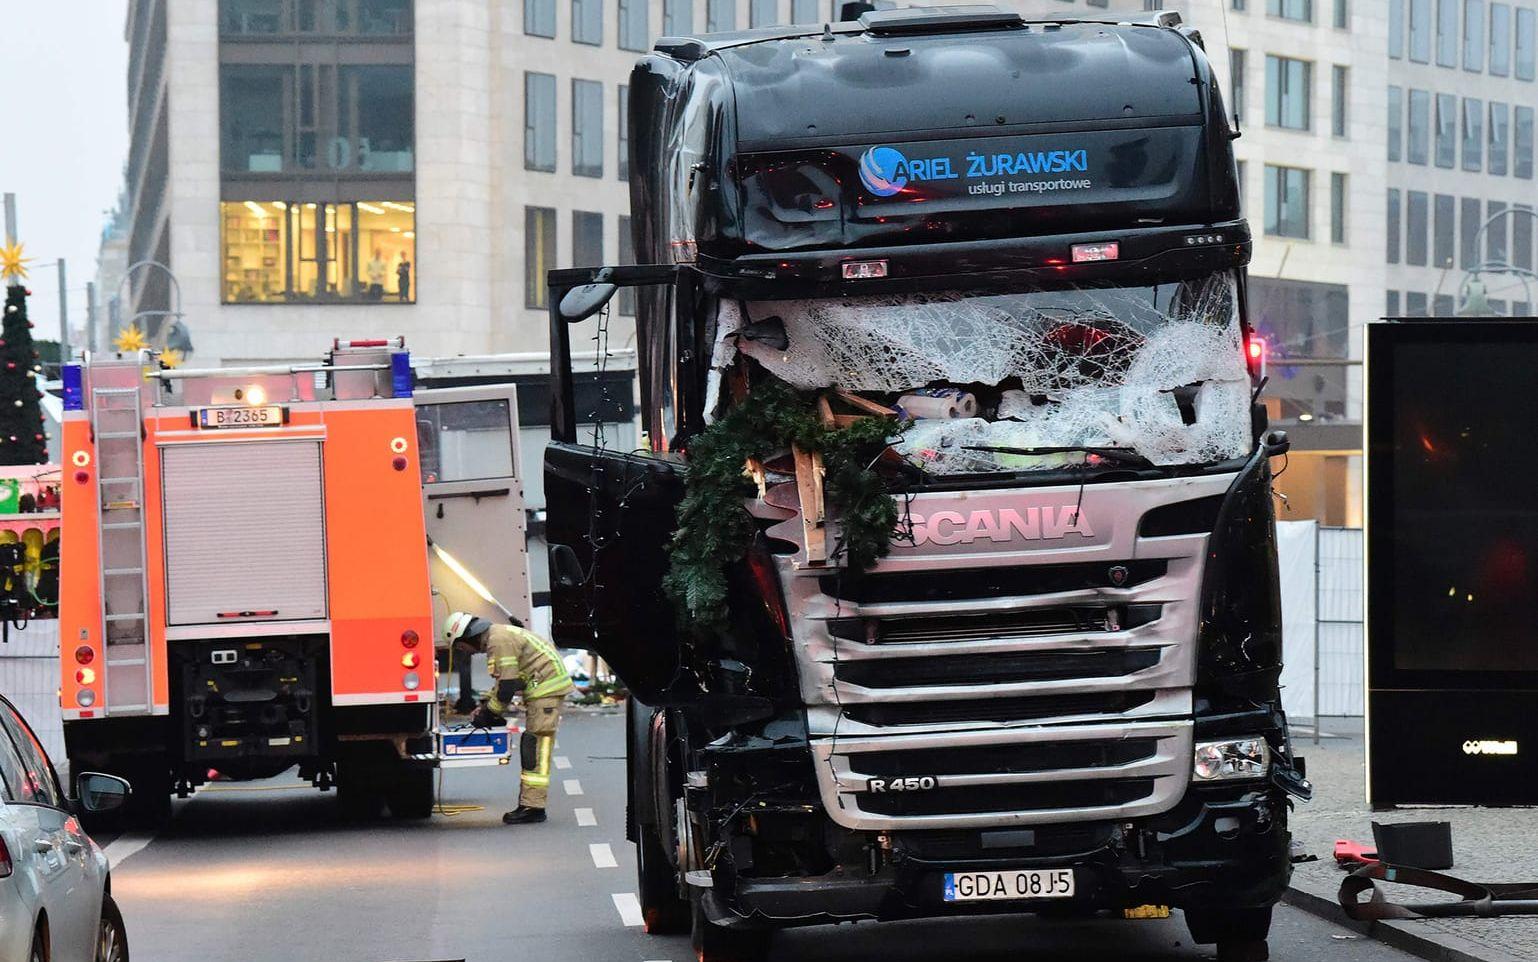 Förödelsen efter terrorattacken i Berlin. Foto: TT